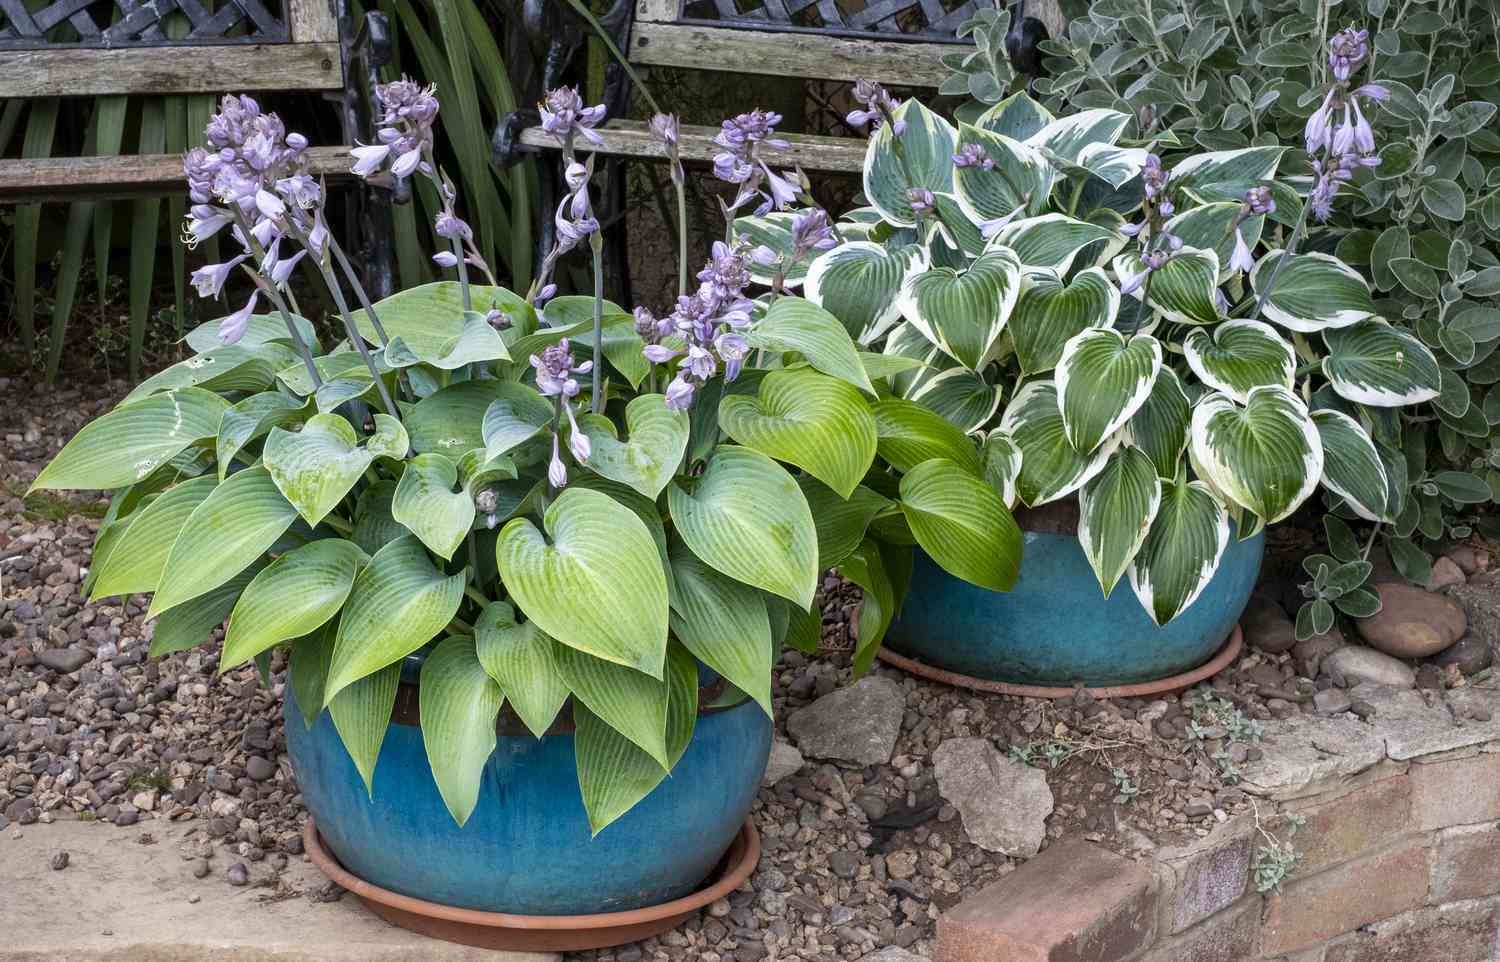 Macetas de plantas Hosta en un jardín inglés